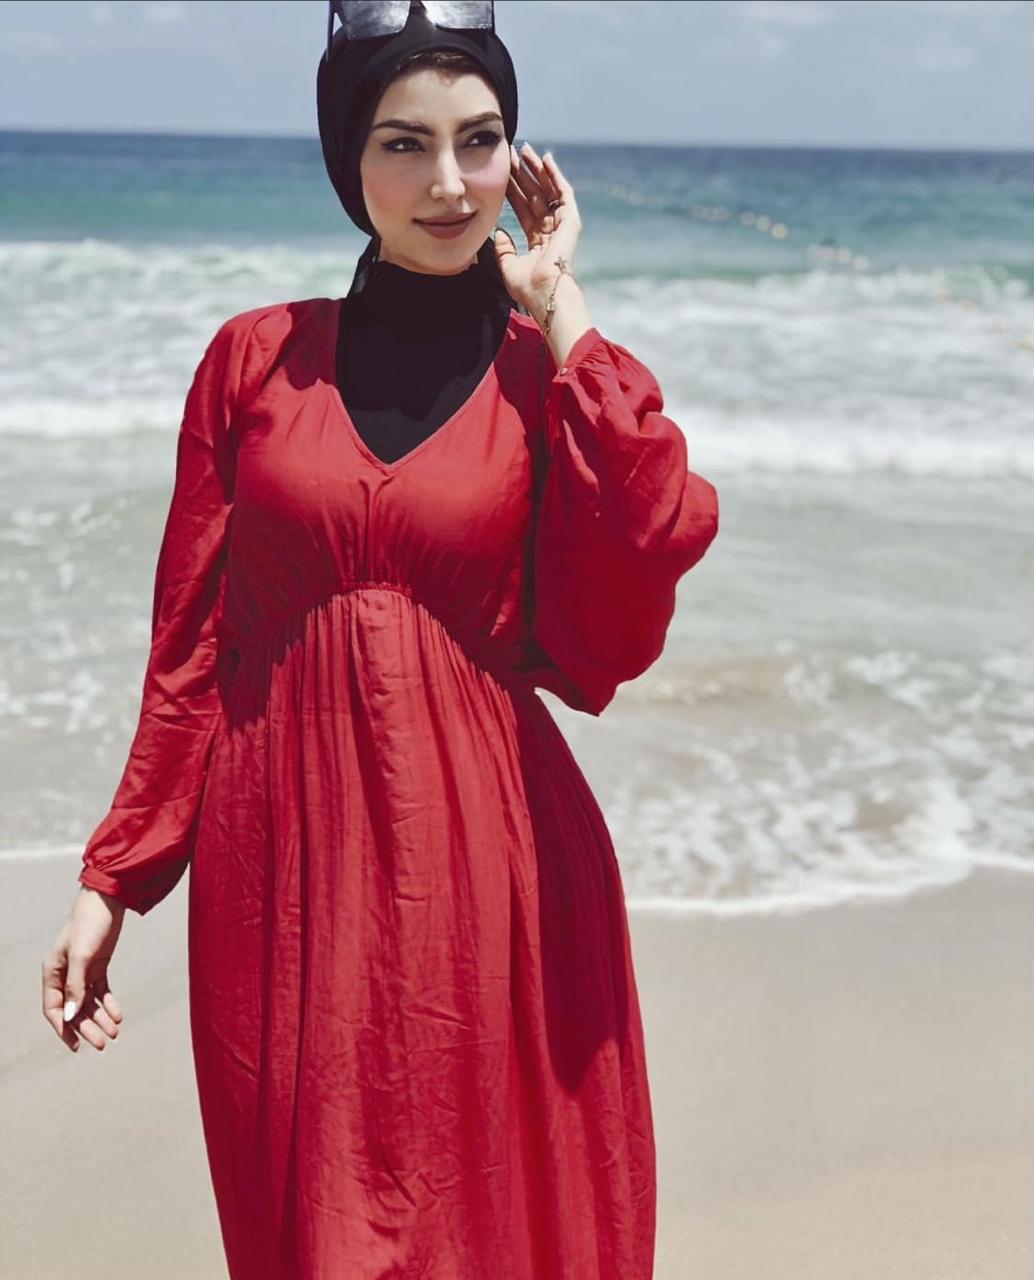  فاطمة سعيد بفستان طويل للبحر -الصورة من حسابها على الانستغرام